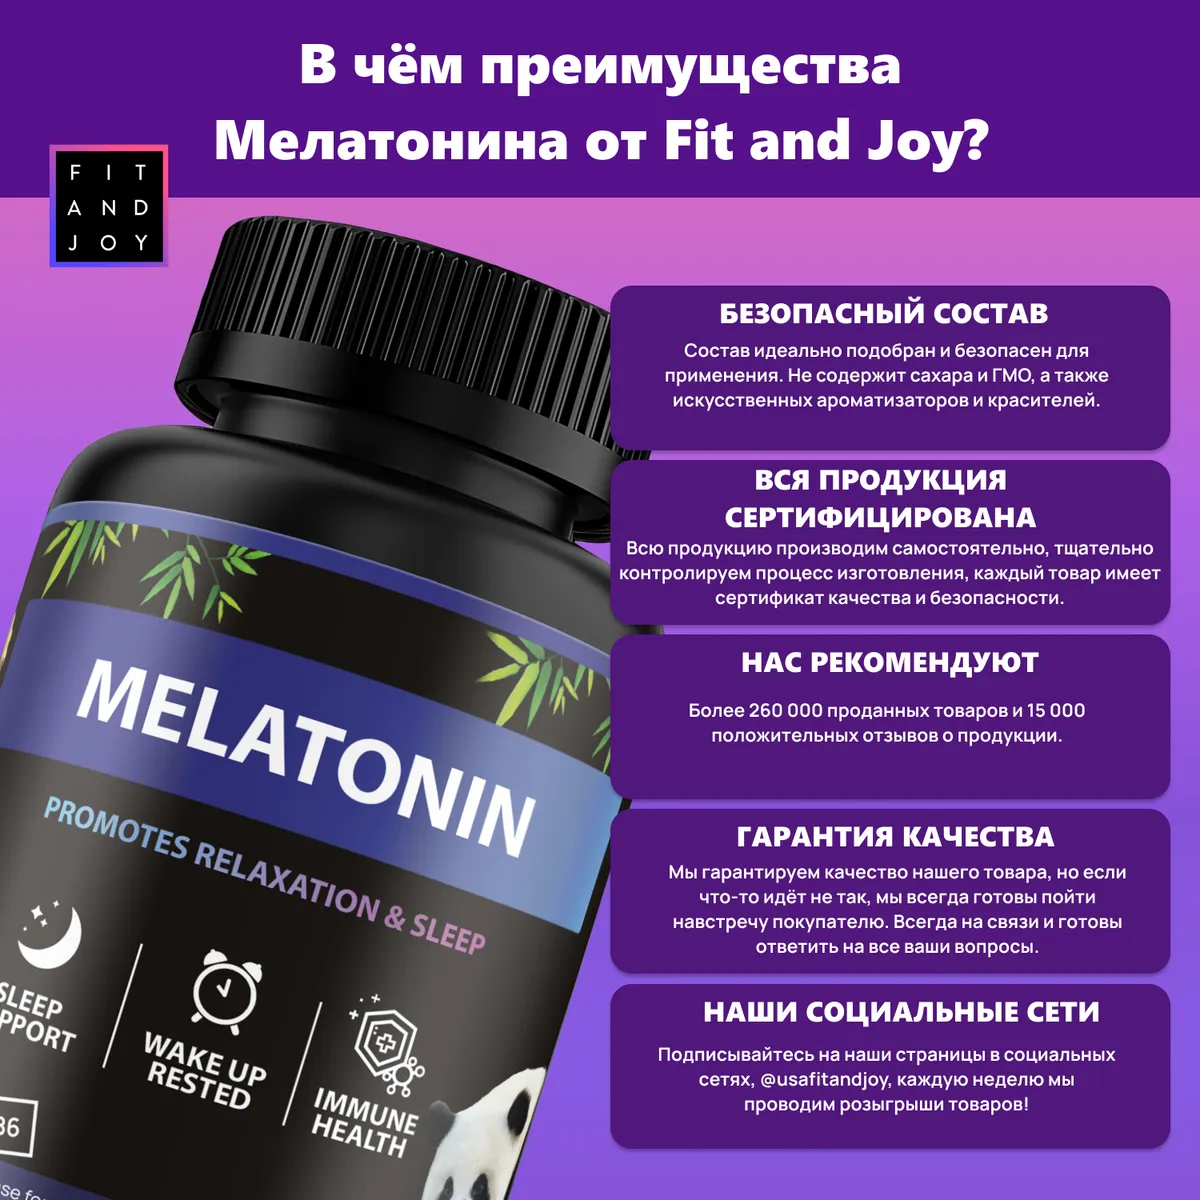 Что такое мелатонин?